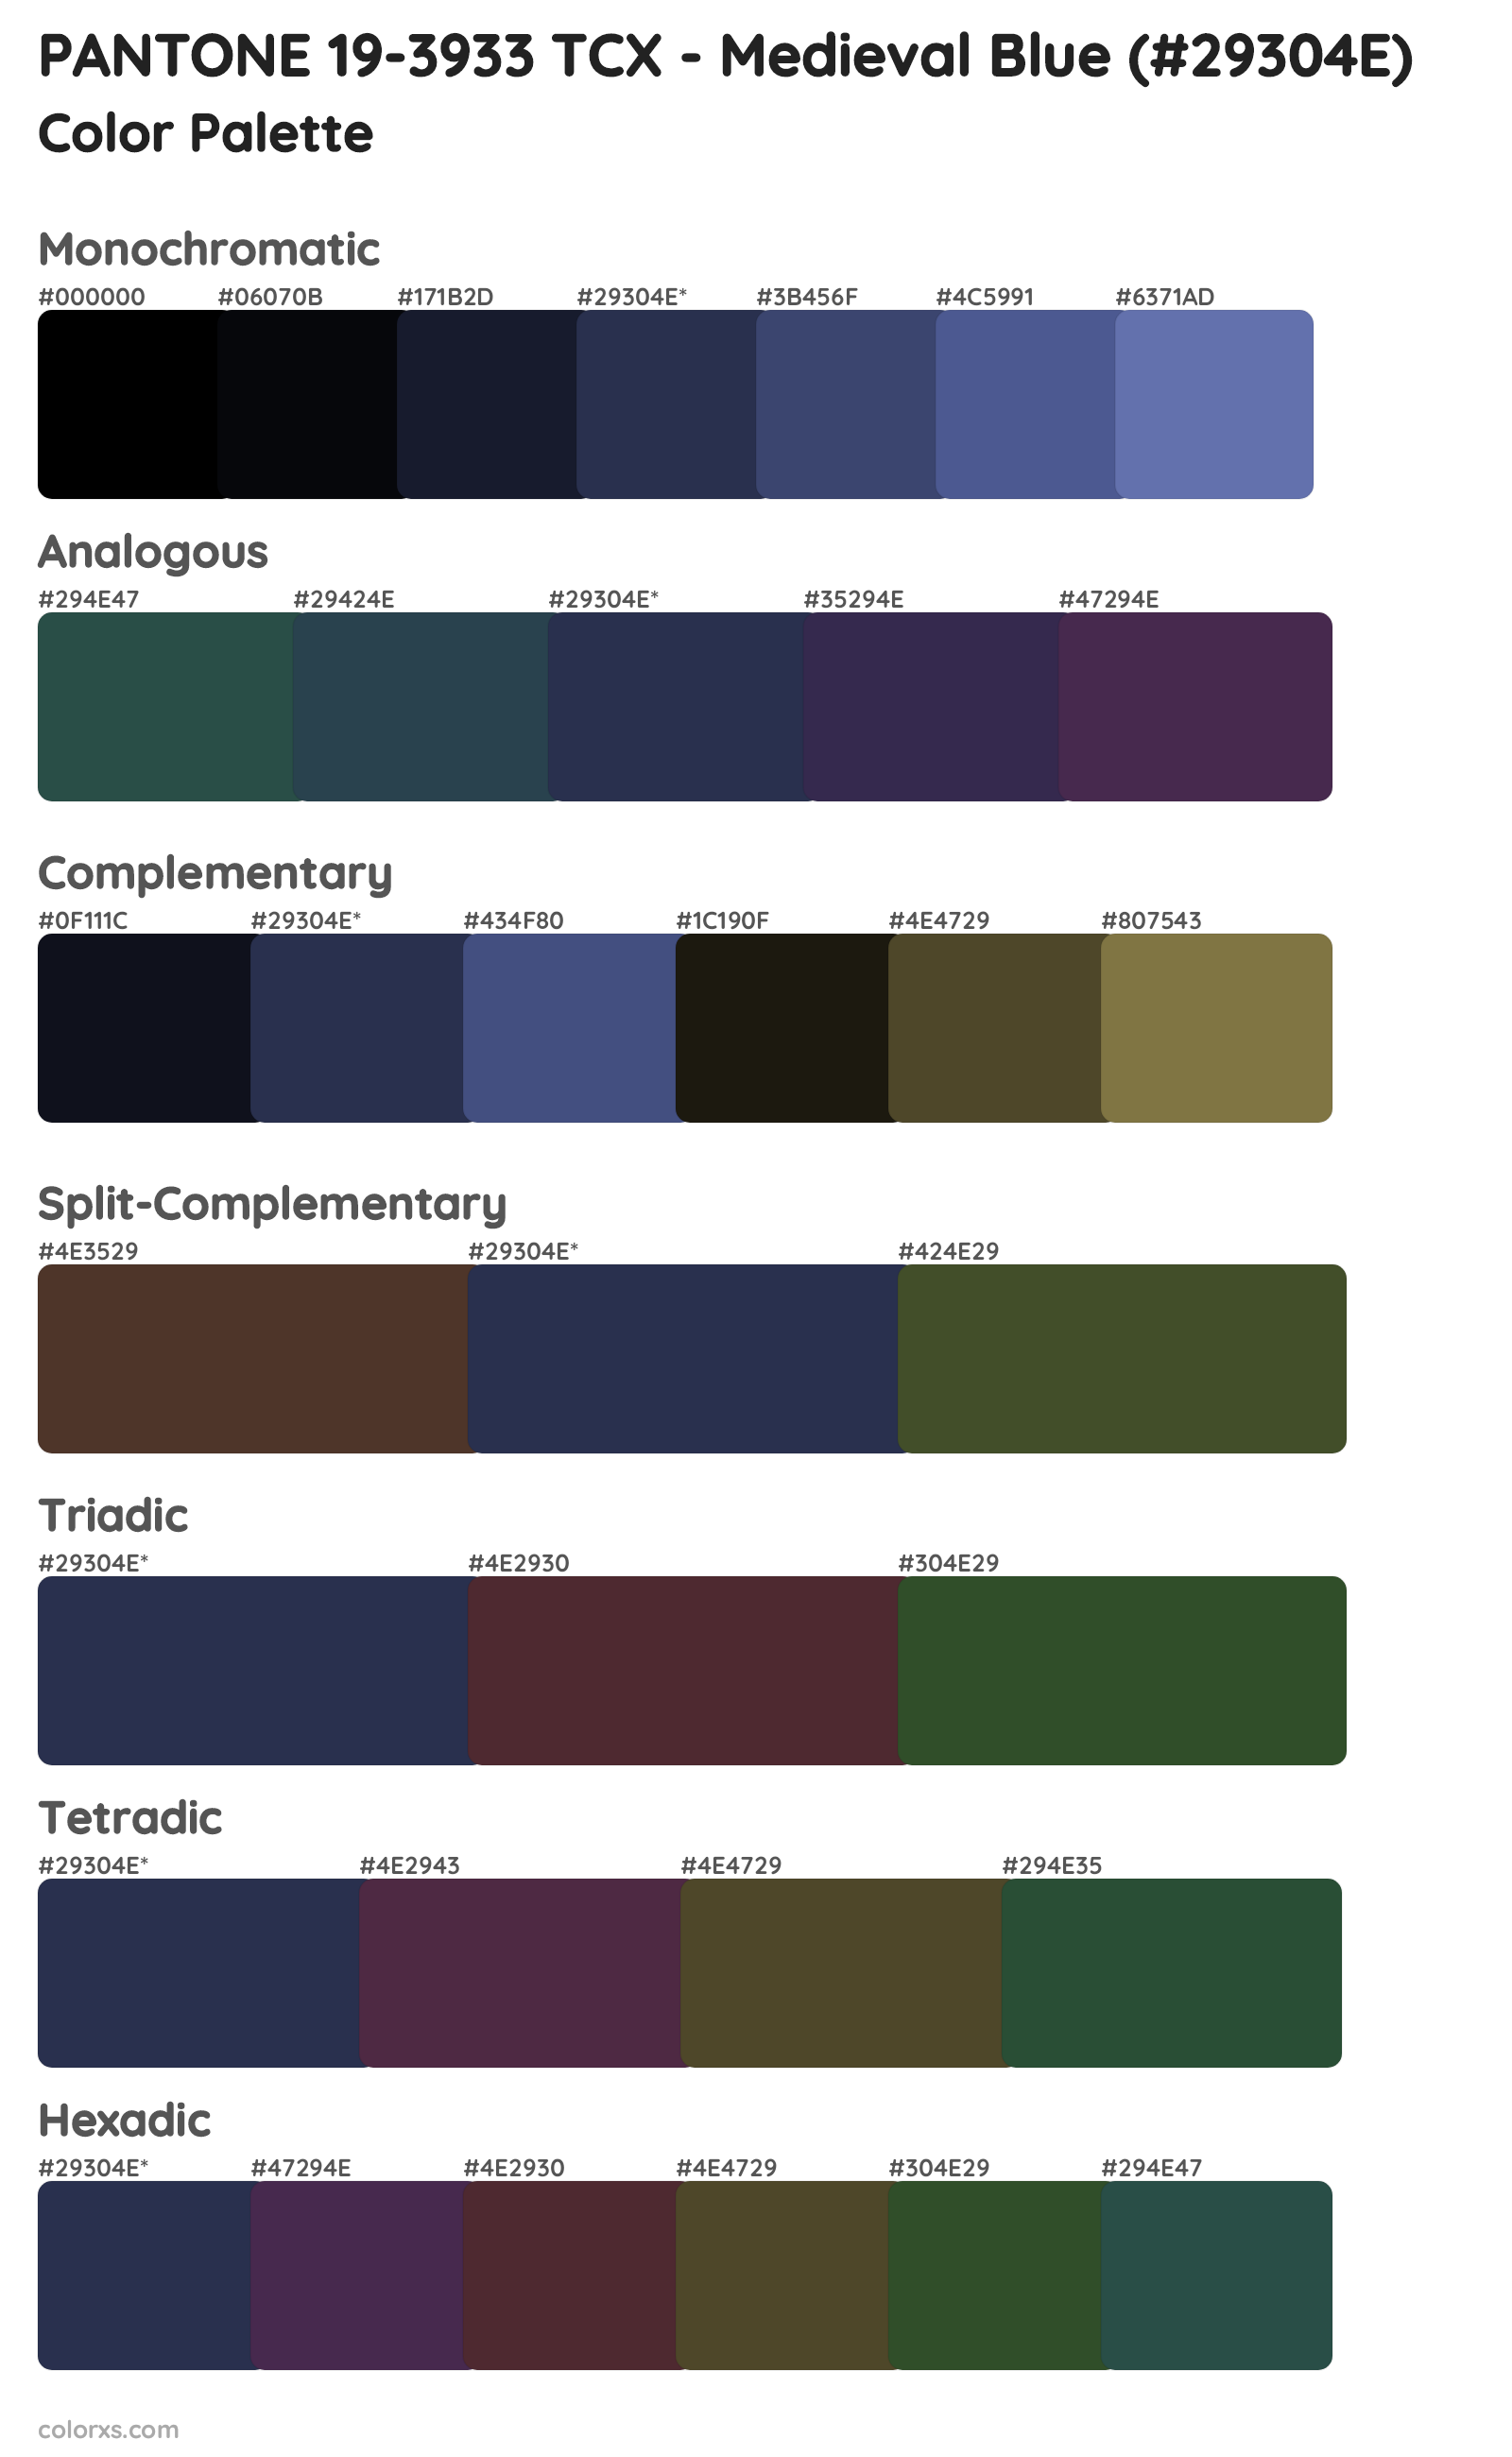 PANTONE 19-3933 TCX - Medieval Blue Color Scheme Palettes